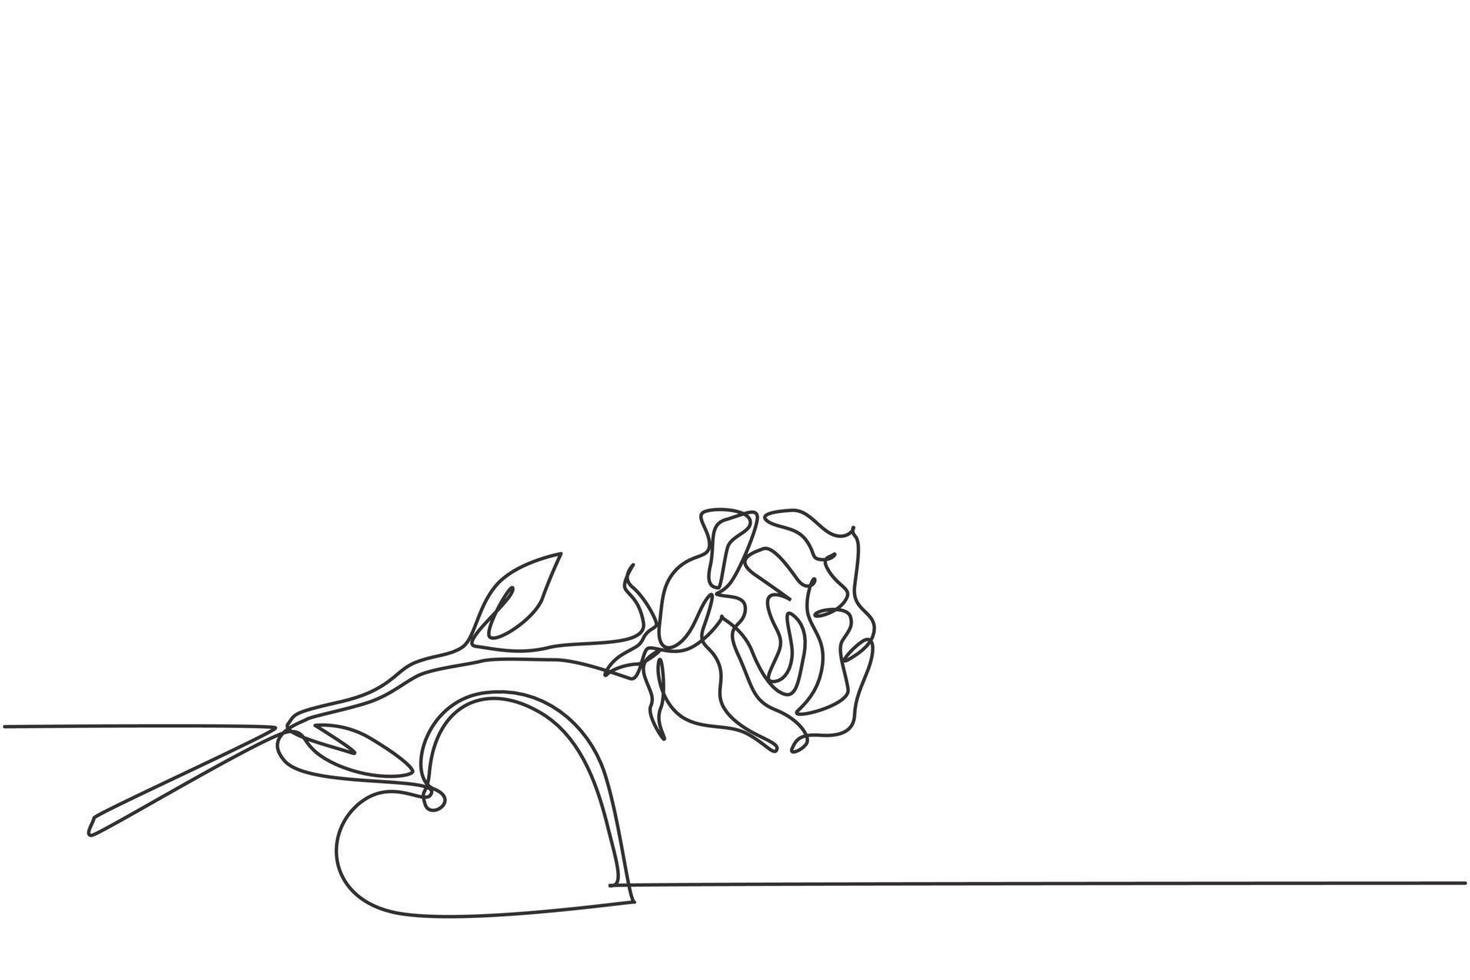 en kontinuerlig linjeteckning av färsk romantisk vacker rosblomma och hjärtformat gratulationskort. trendig inbjudan, logotyp, banner, affisch koncept enkel linje rita design vektor grafisk illustration